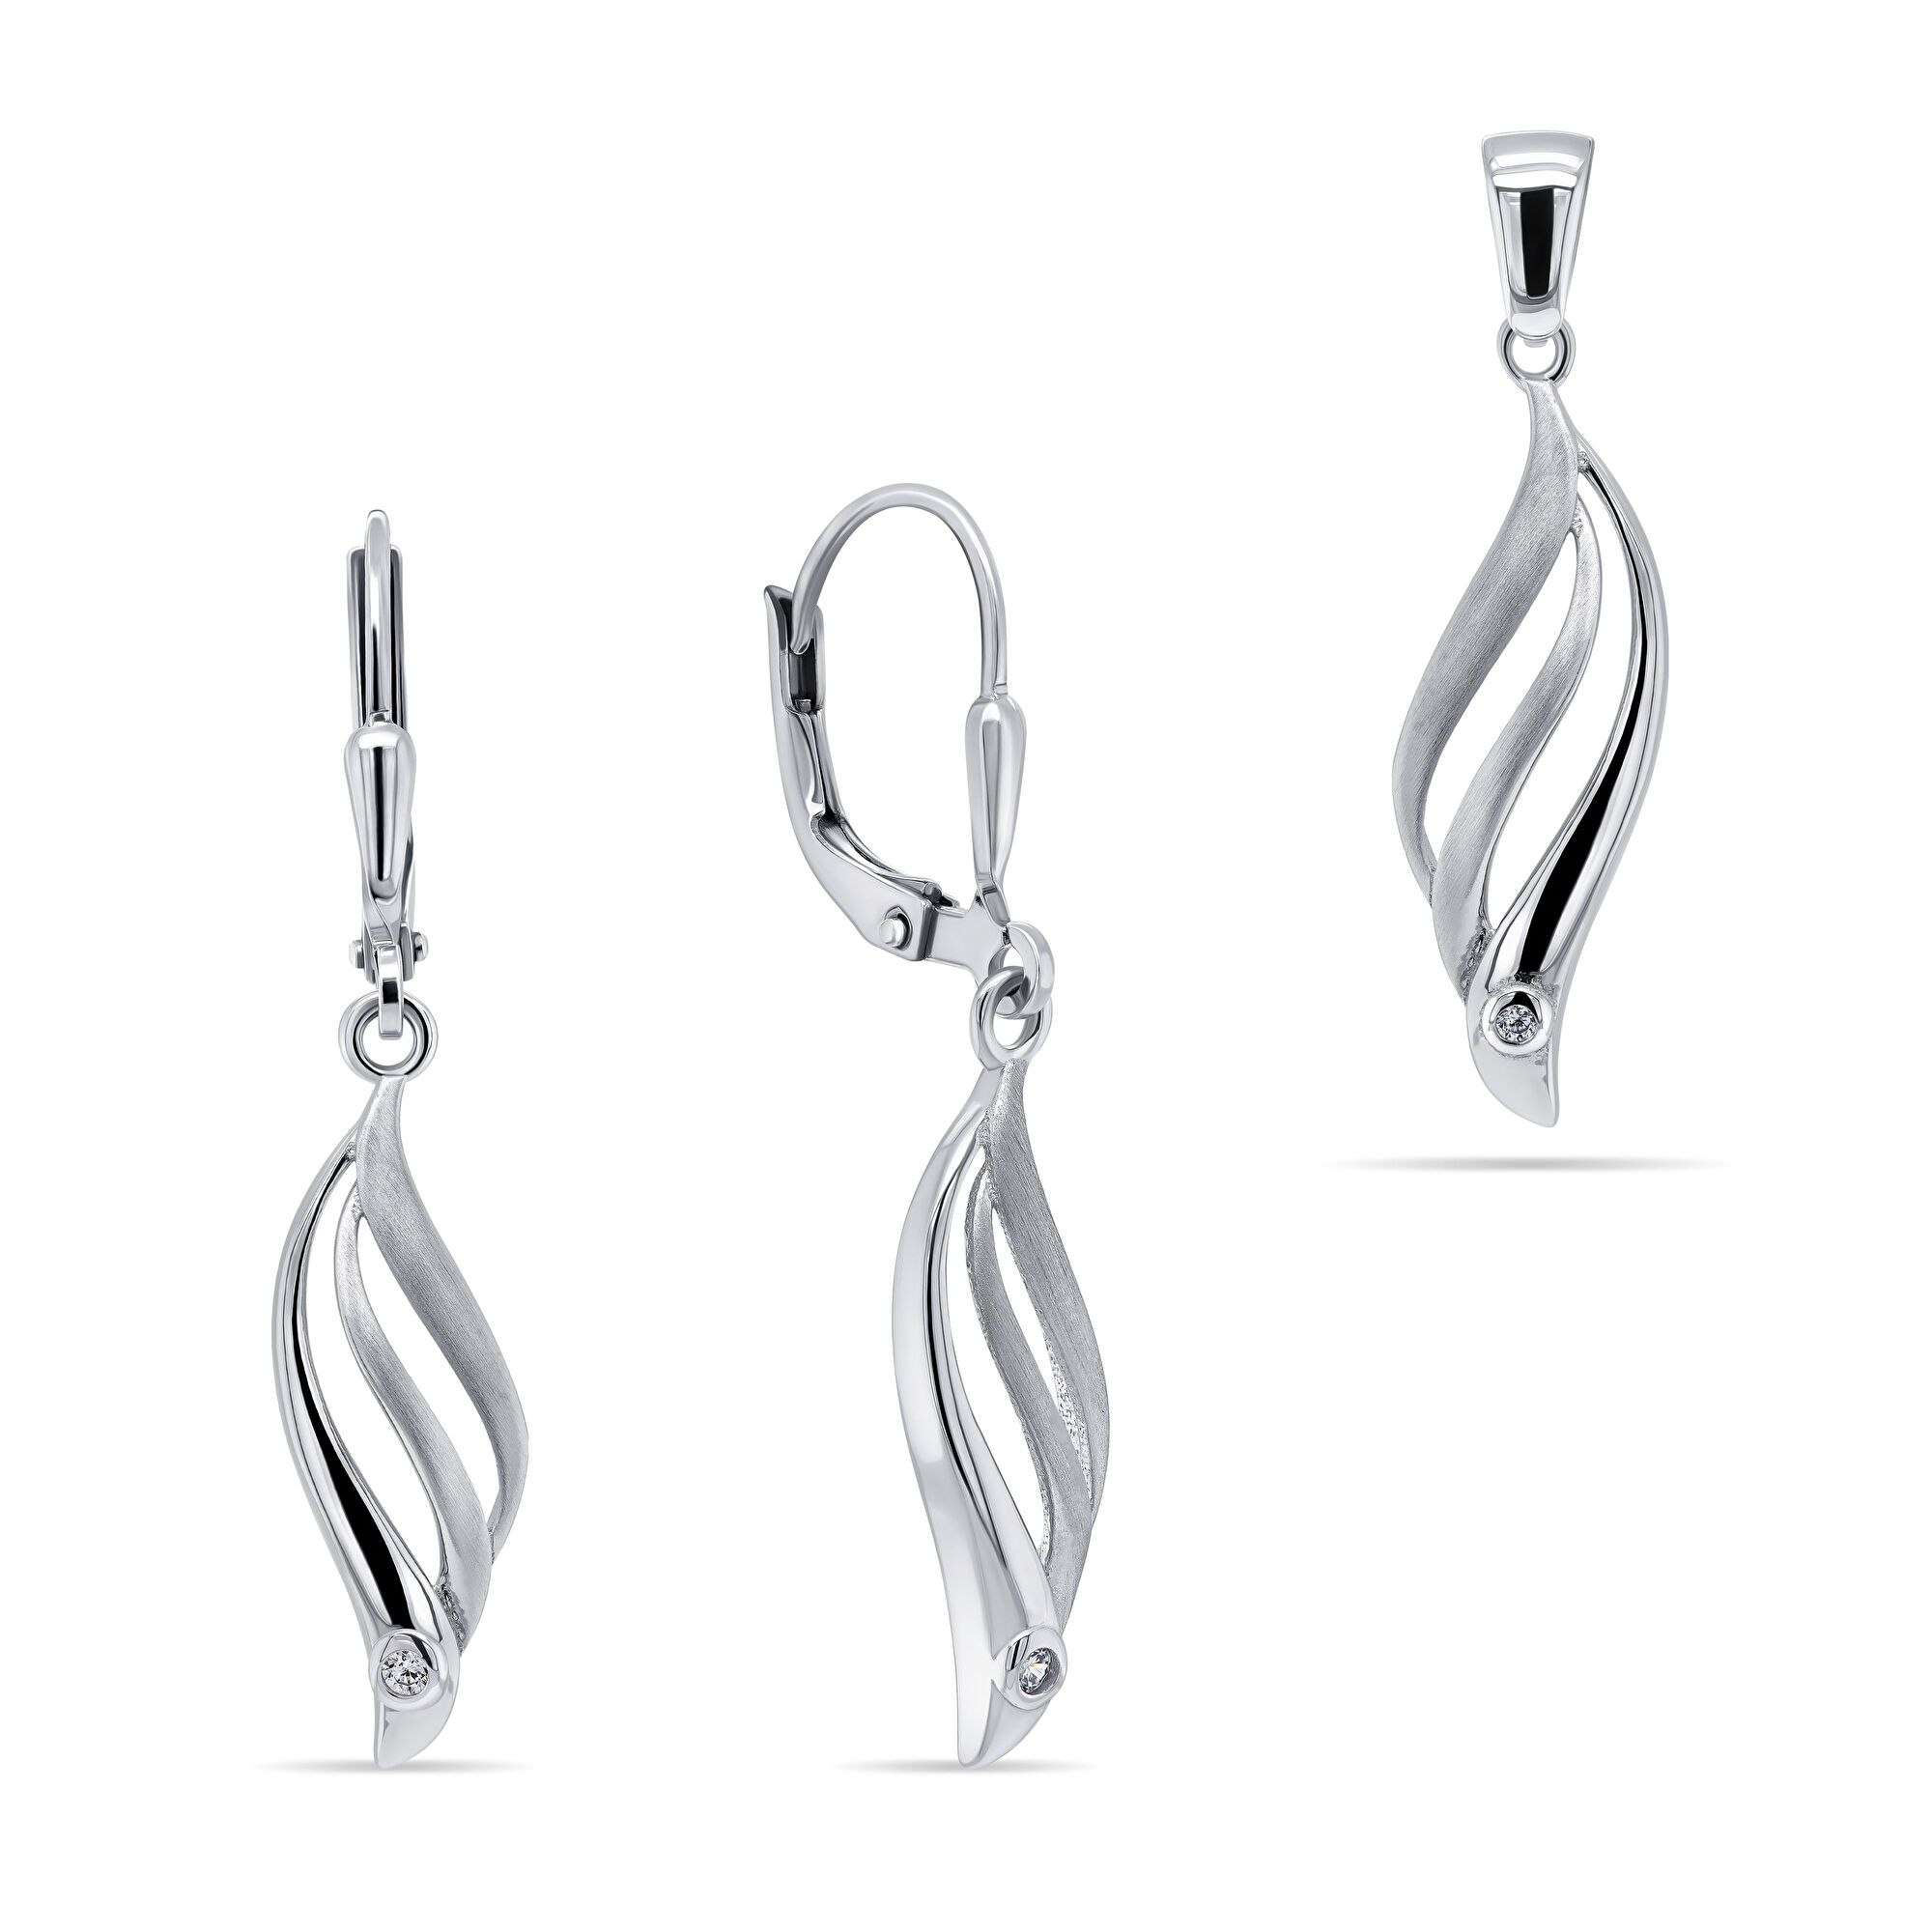 Brilio Silver Půvabný stříbrný set šperků SET202W (přívěsek, náušnice)